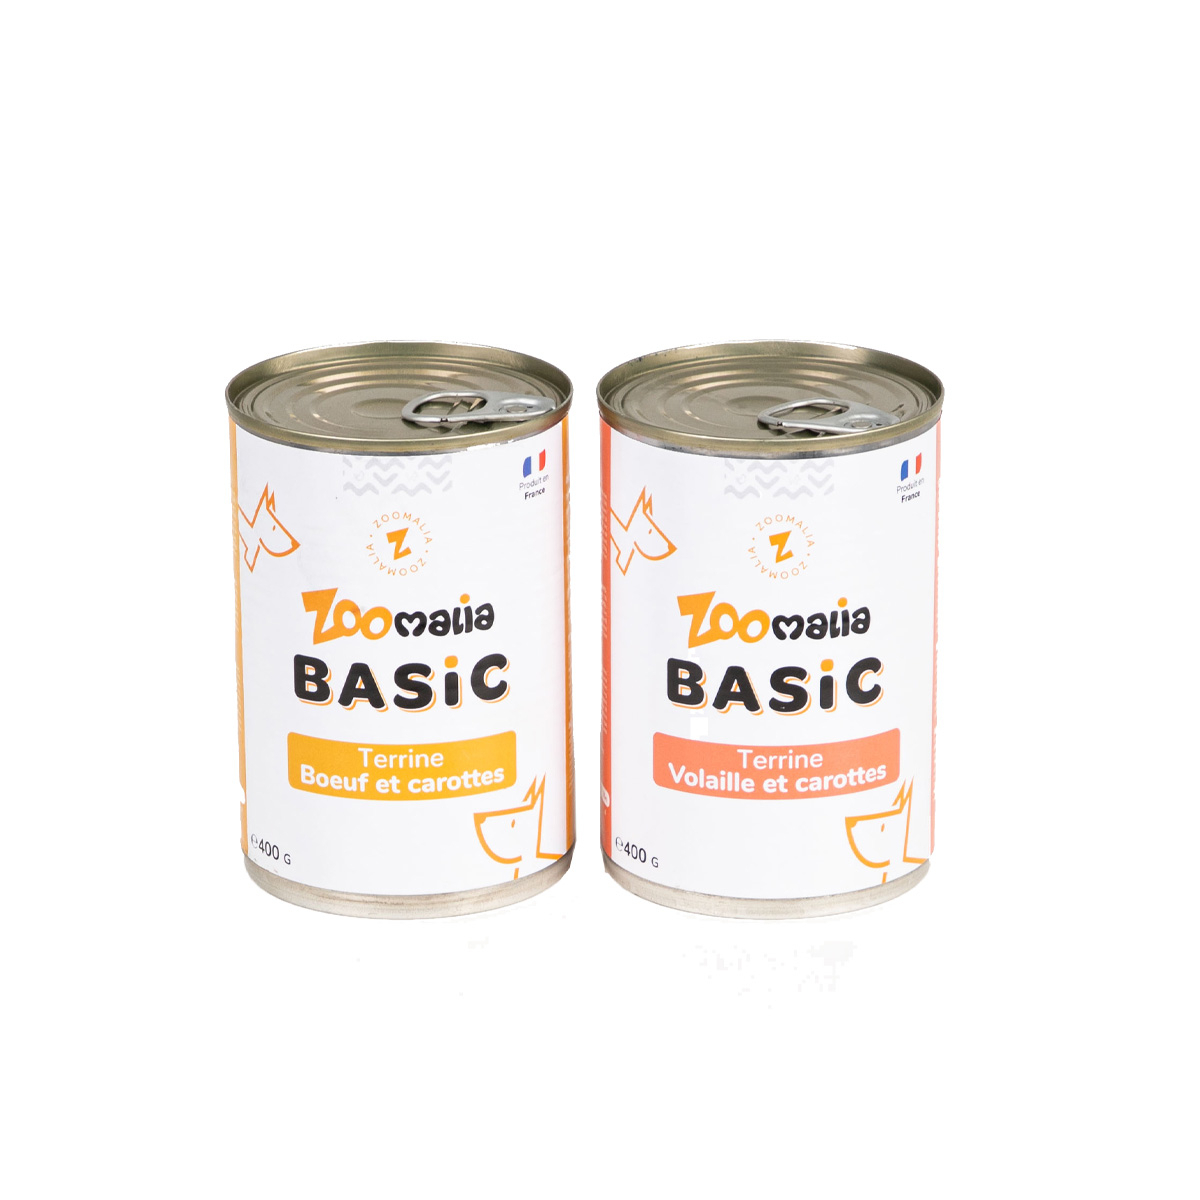 Zoomalia Basic Comida húmeda para perros sin cereales - 2 recetas para elegir